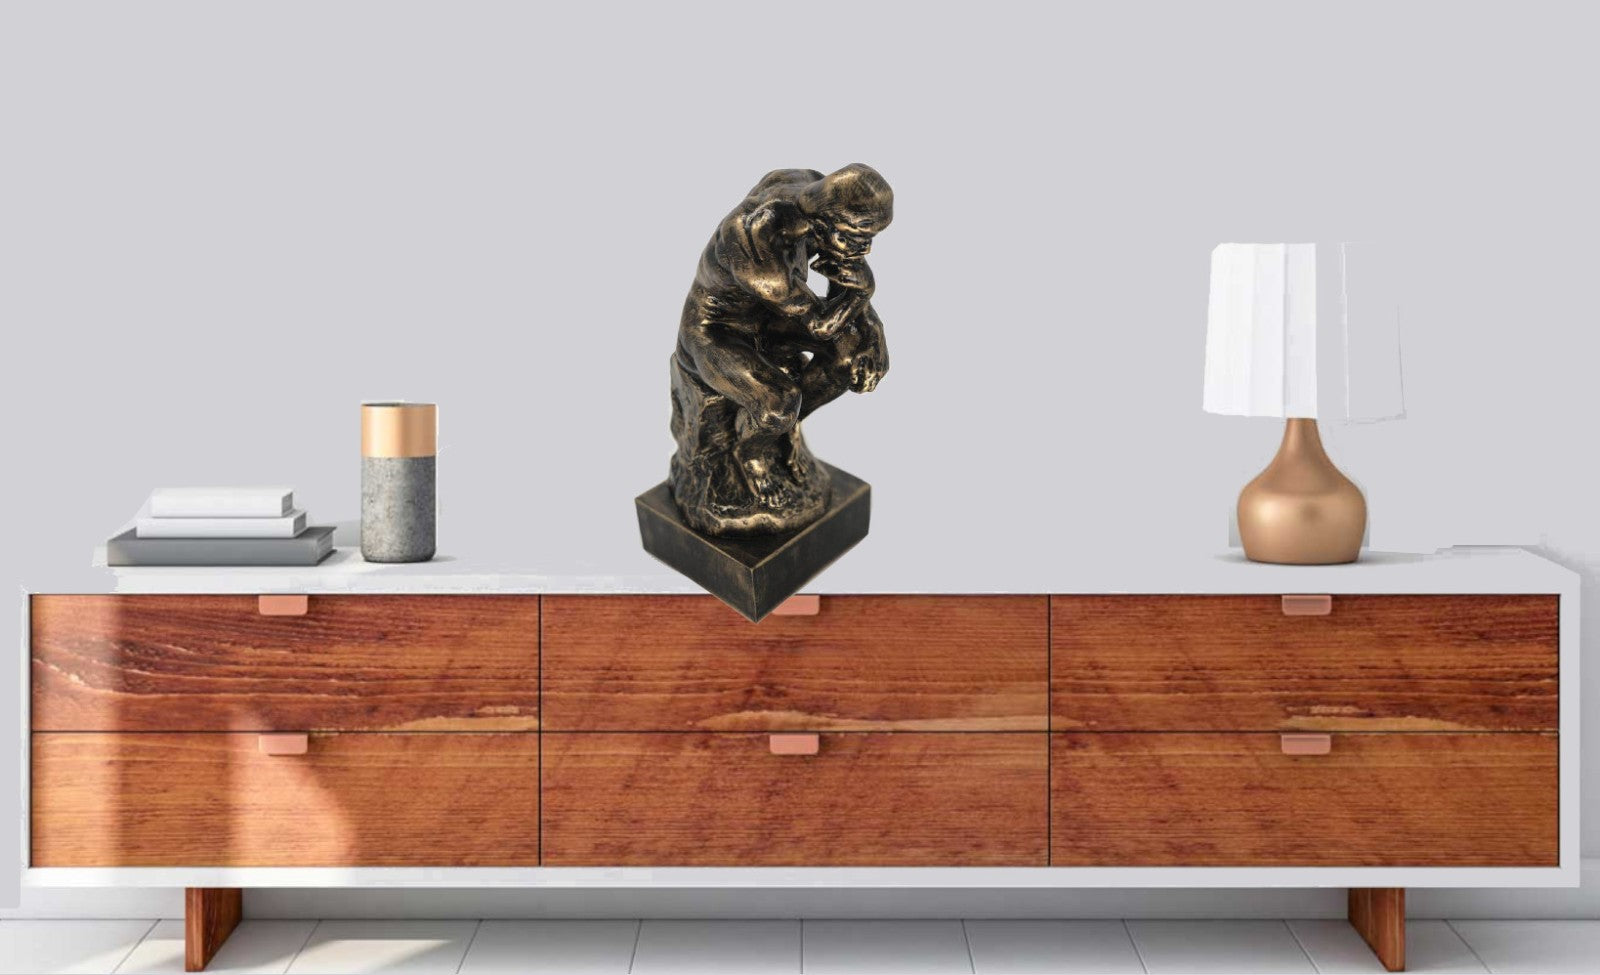 NEW THE THINKER by Rodin STATUE Light BRONZE EUROPEAN ART SCULPTURE FIGURE Gift